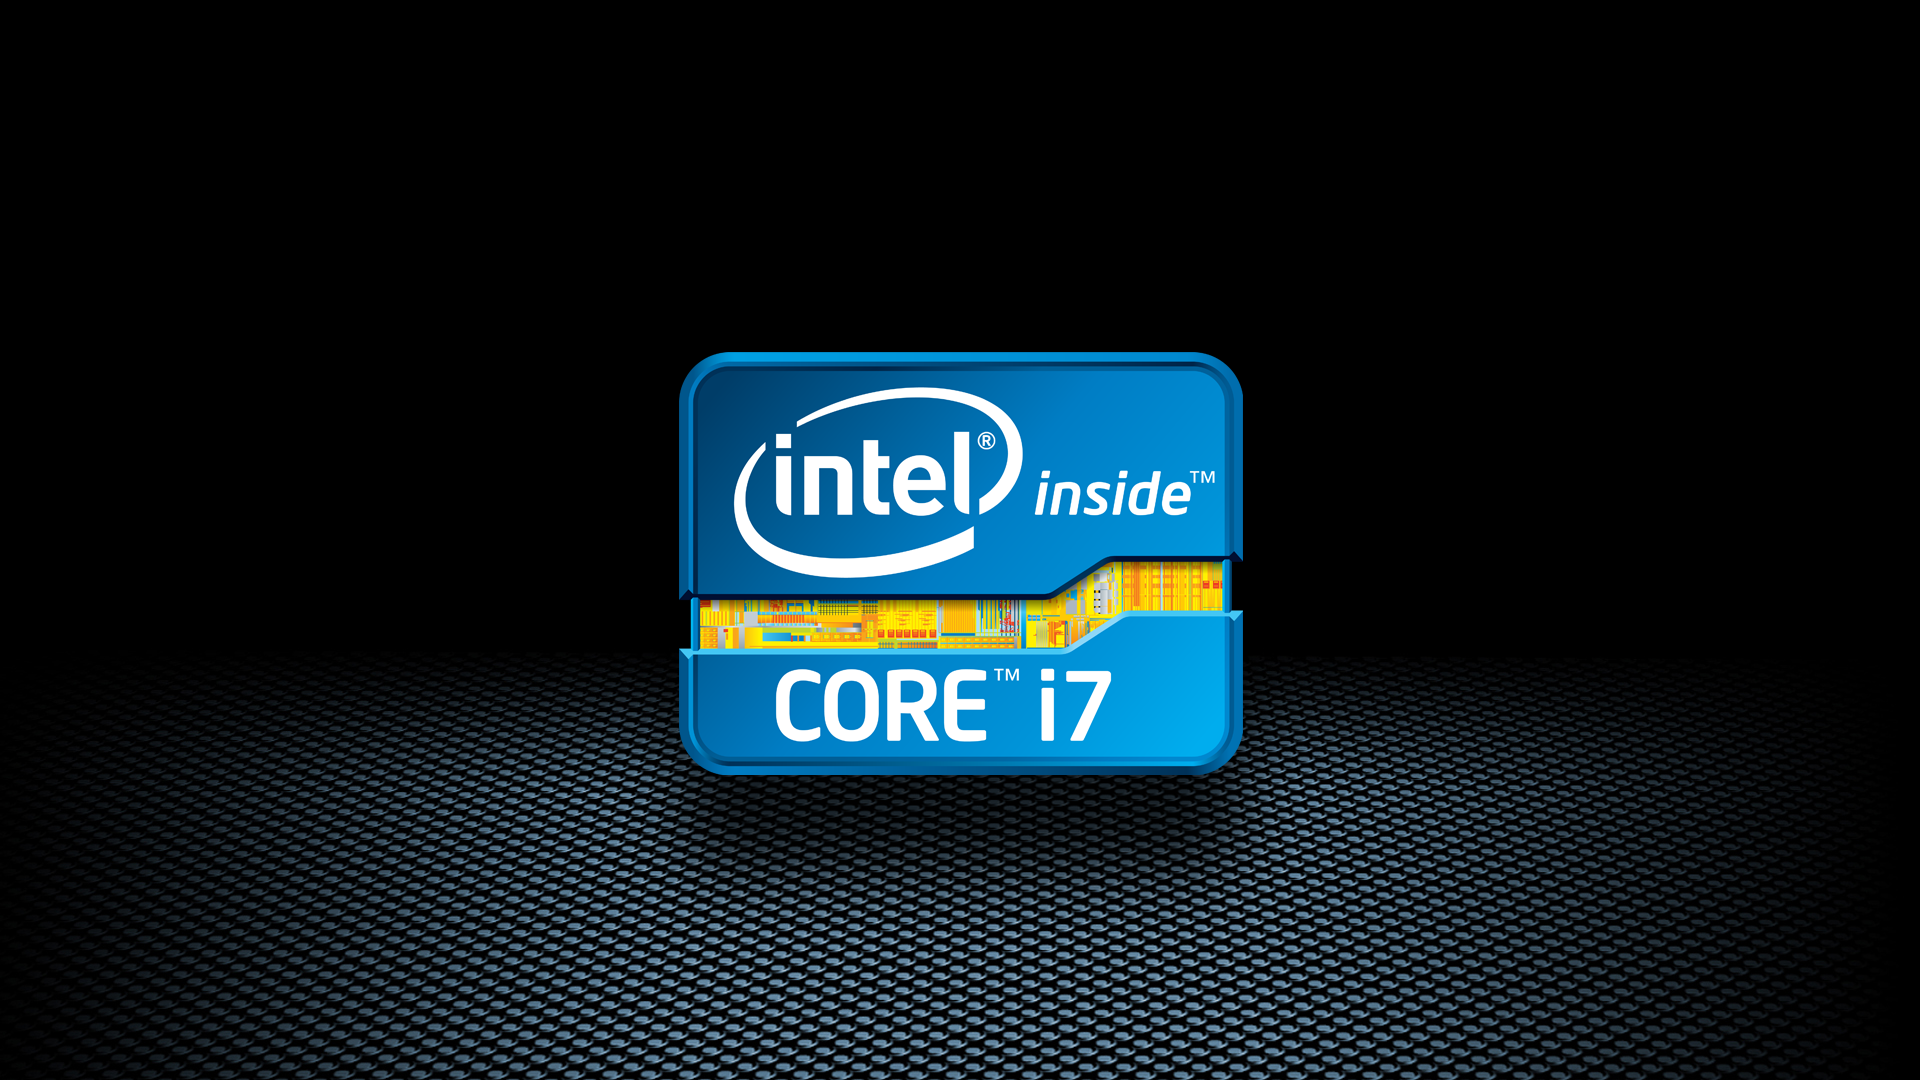 Intel I7 Wallpaper Intel i7 wallp